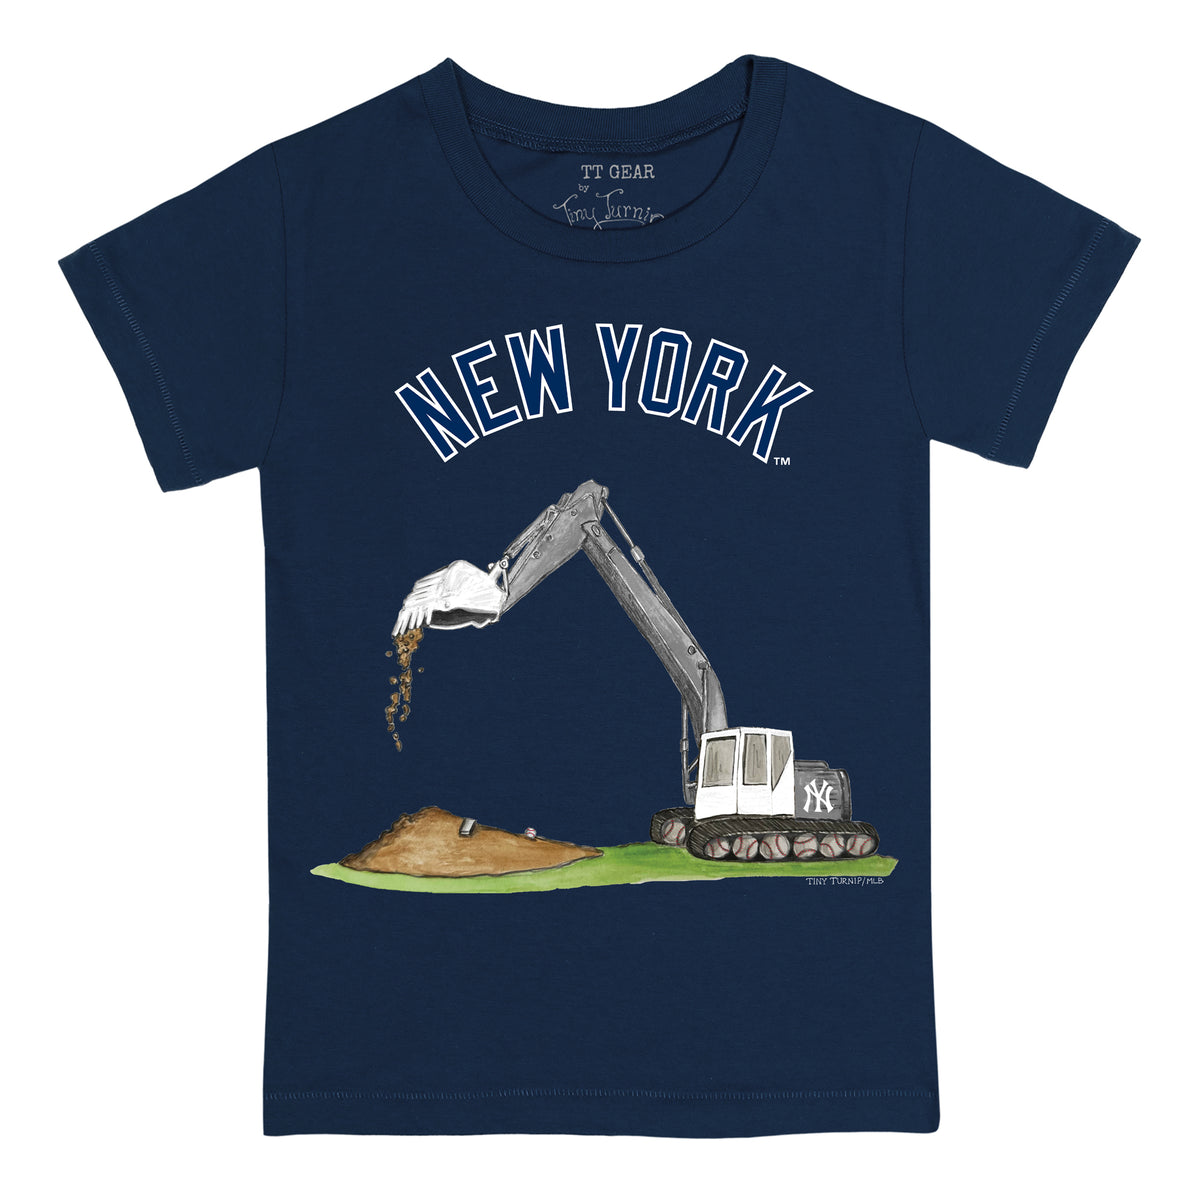 New York Yankees Excavator Tee Shirt